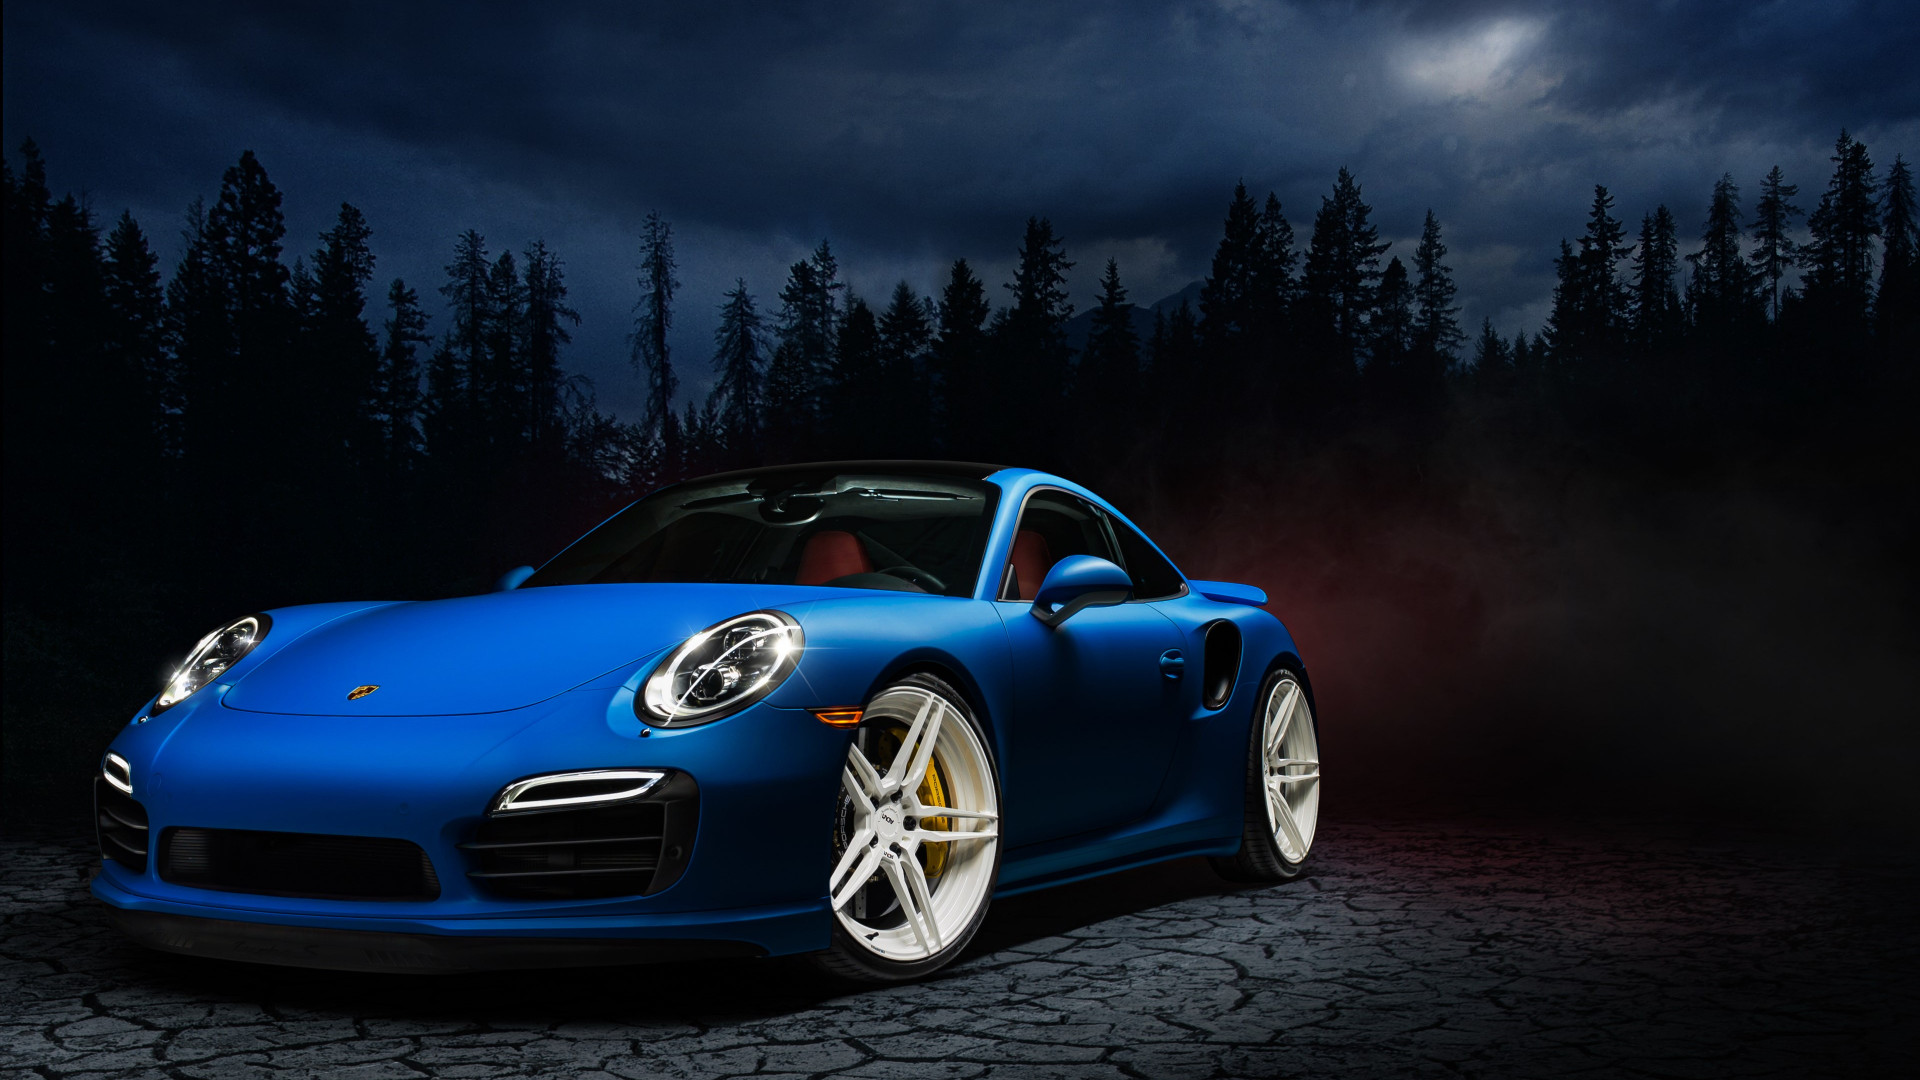 Porsche 911 blue wallpaper 1920x1080